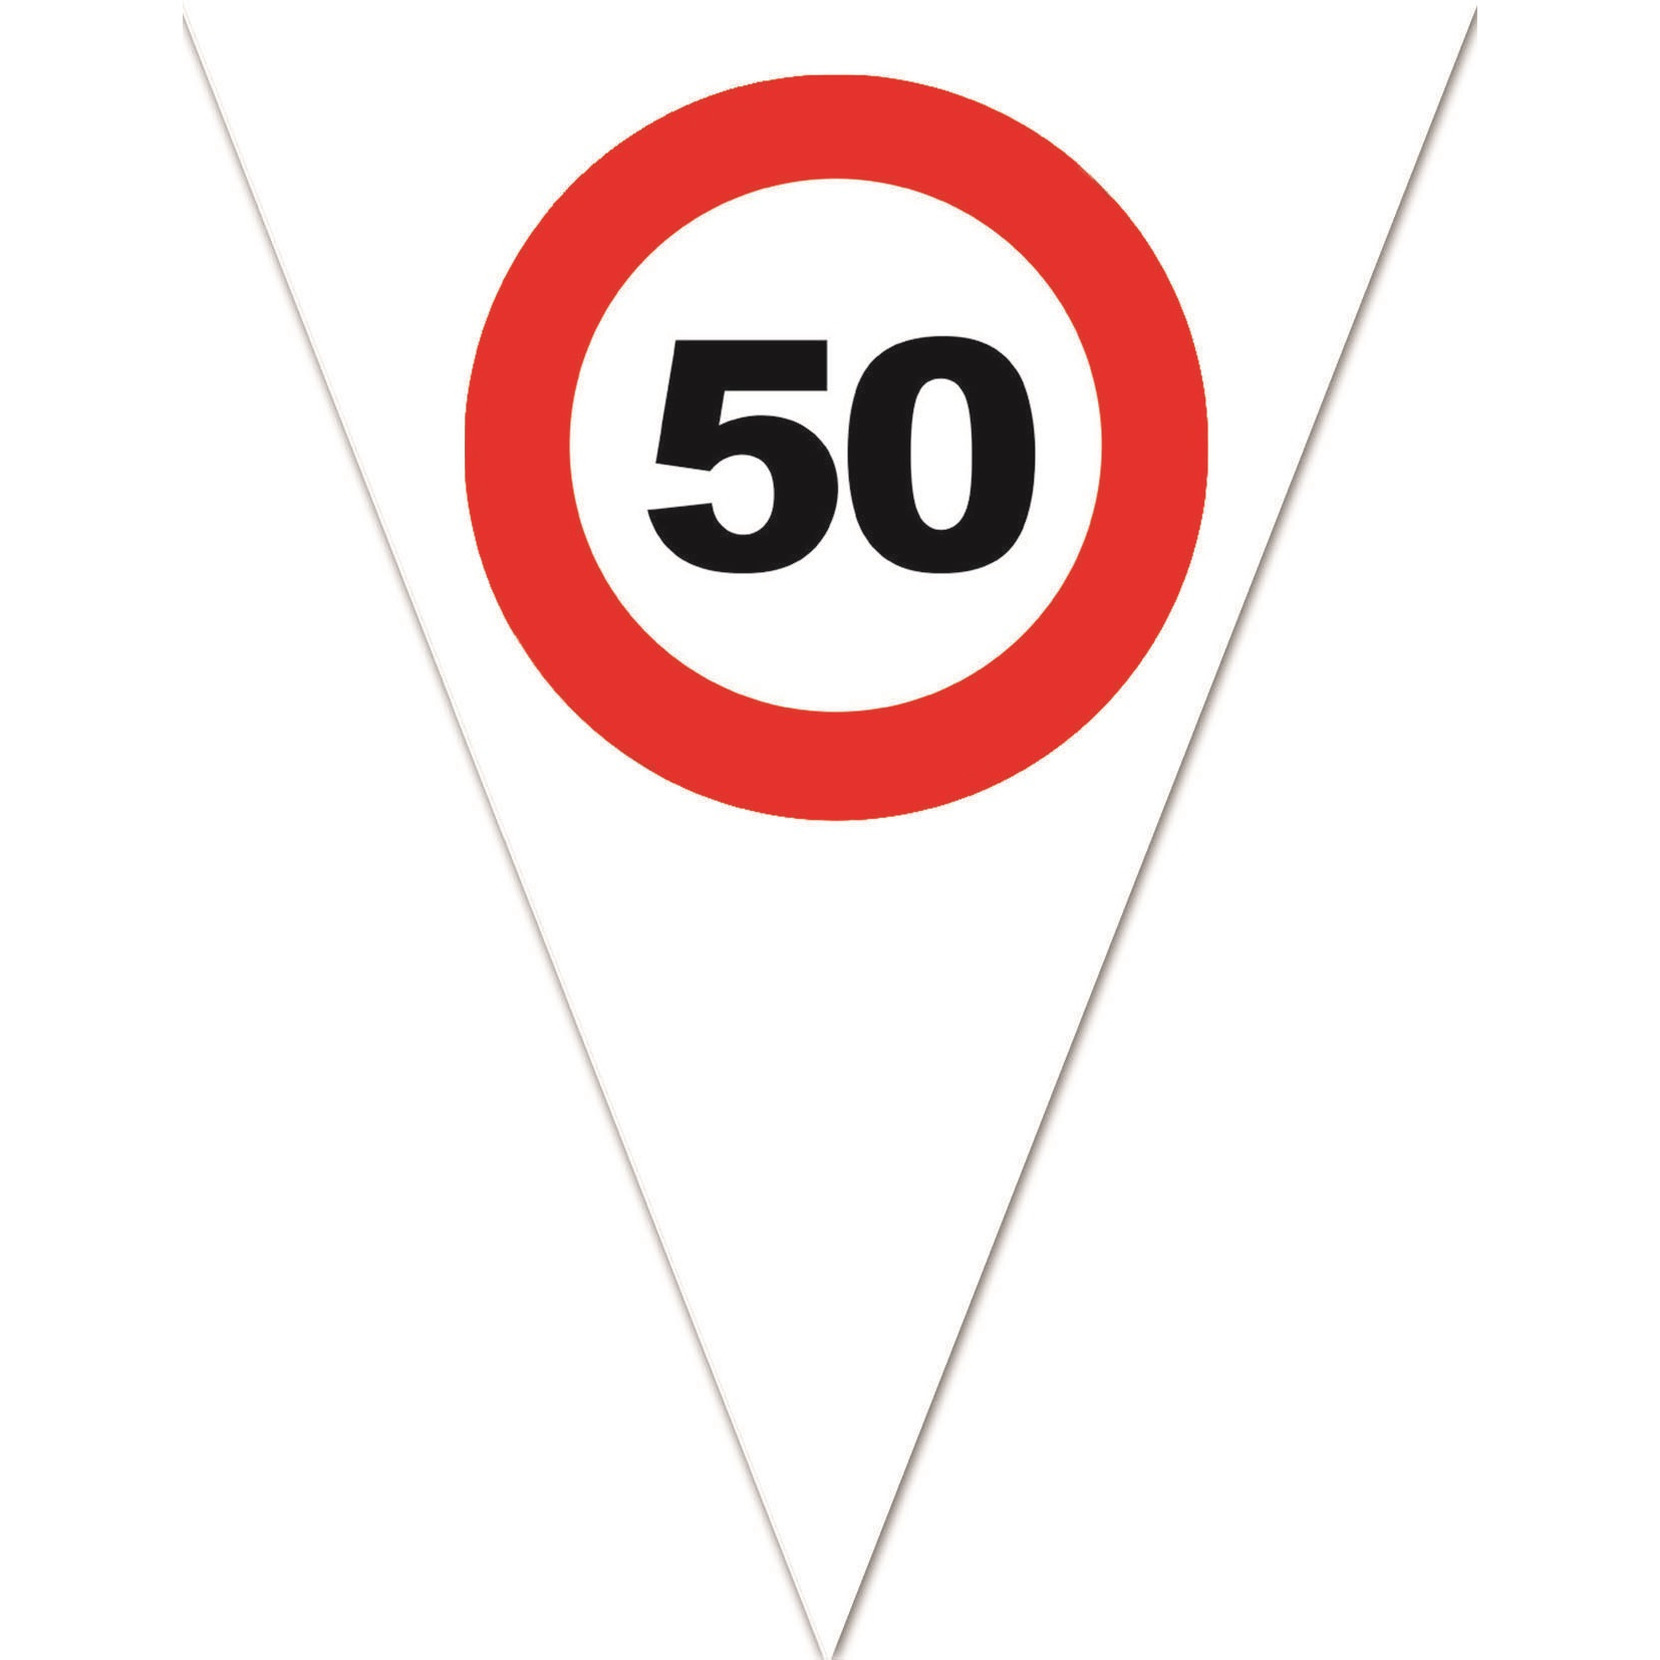 Leeftijd verjaardag vlaggenlijn met 50 jaar stopbord opdruk 5 meter